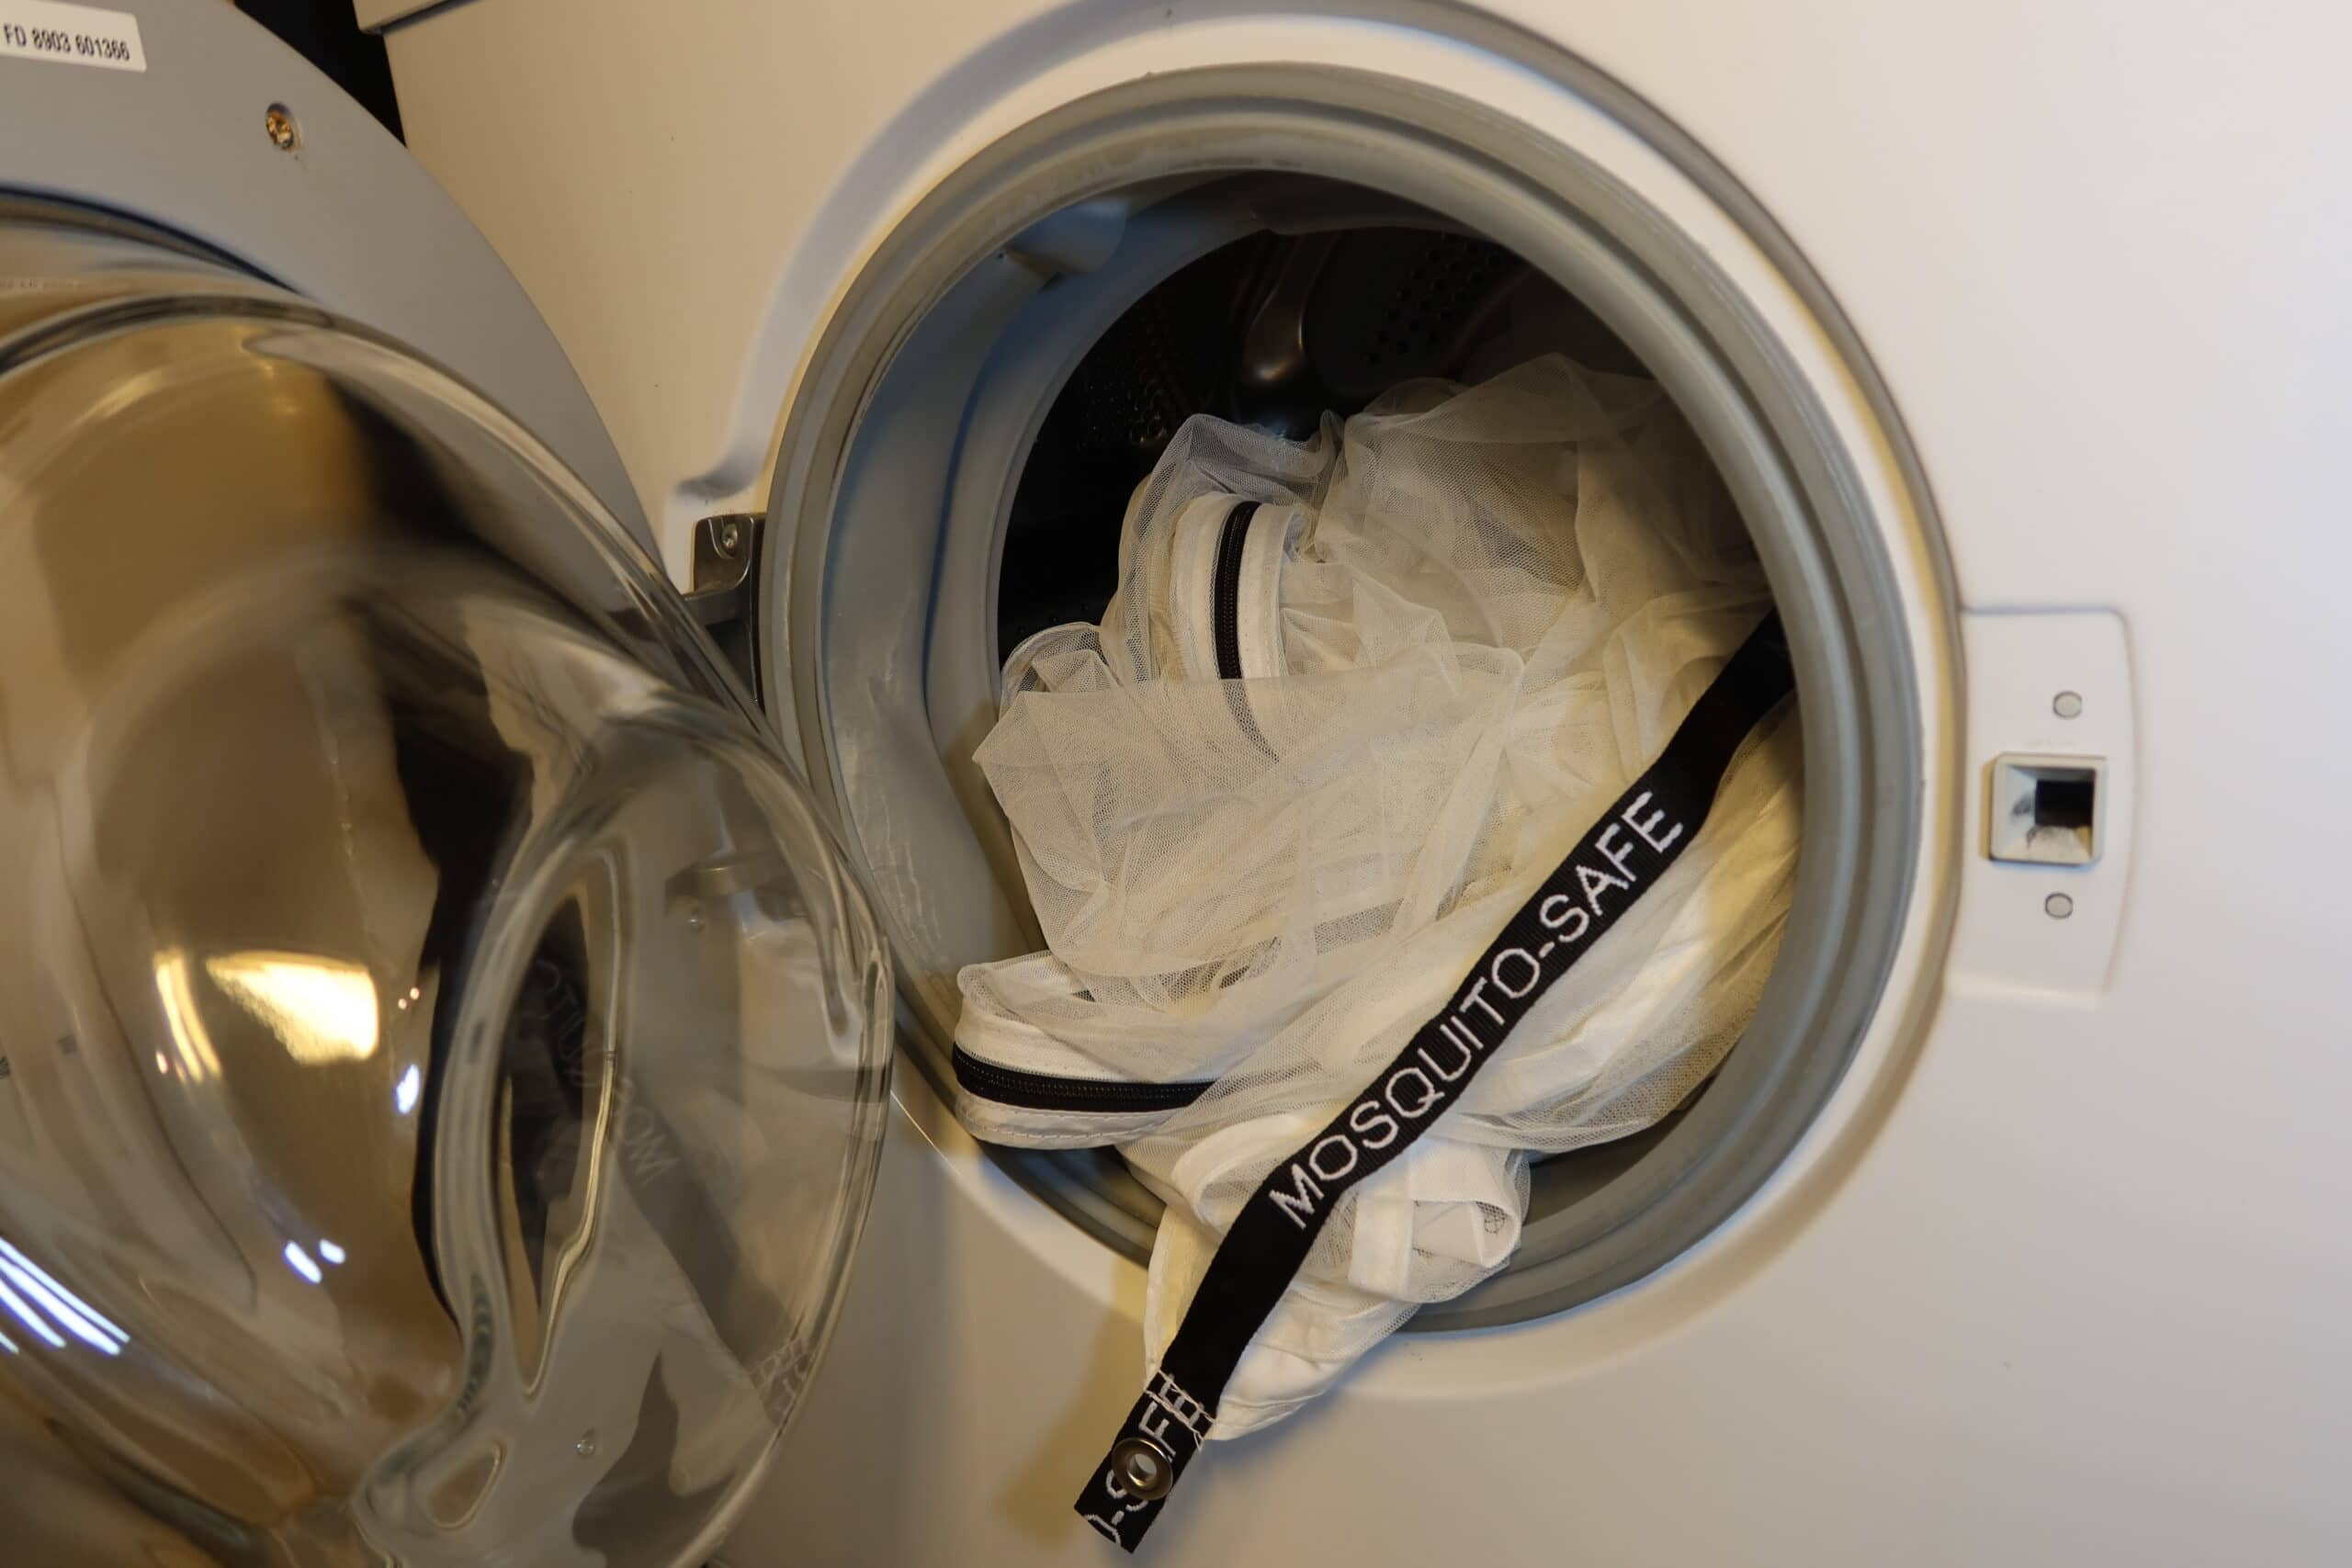 Der Mückenschutz MOSQUITO-SAFE kann bei 40°C in der Waschmaschinegewaschen werden